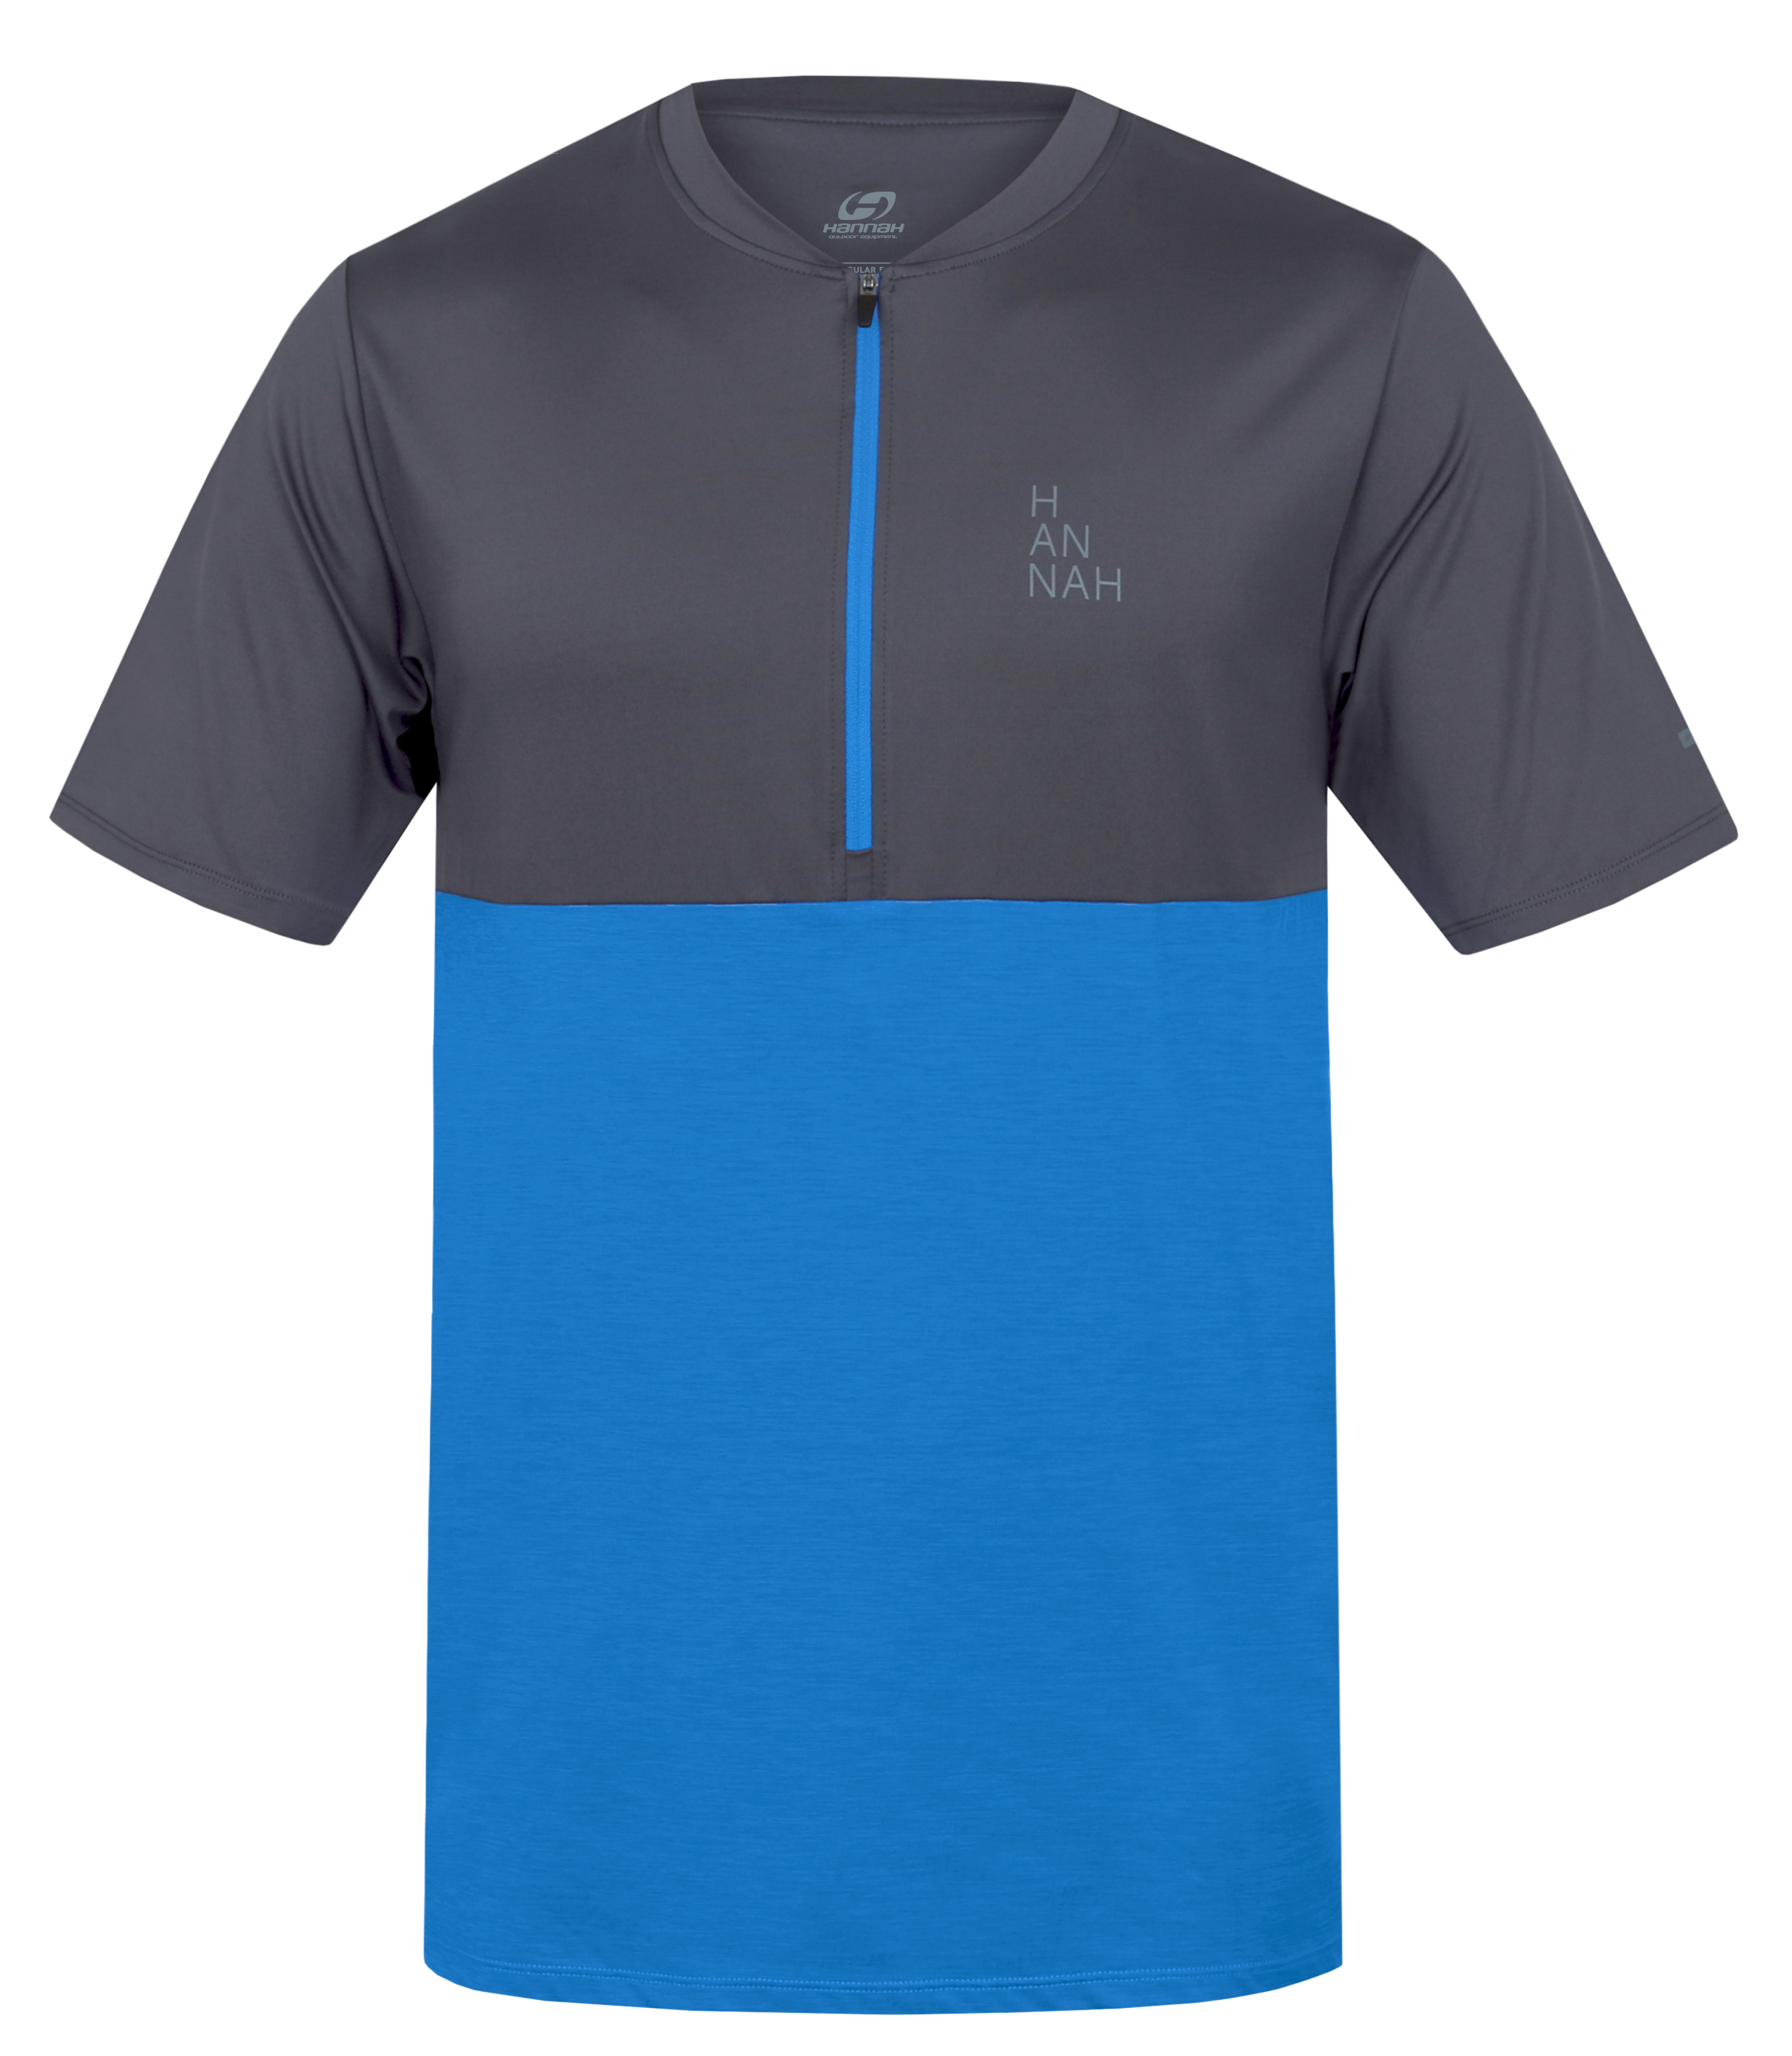 Hannah SANVI asphalt/french blue mel Velikost: M pánské tričko s krátkým rukávem